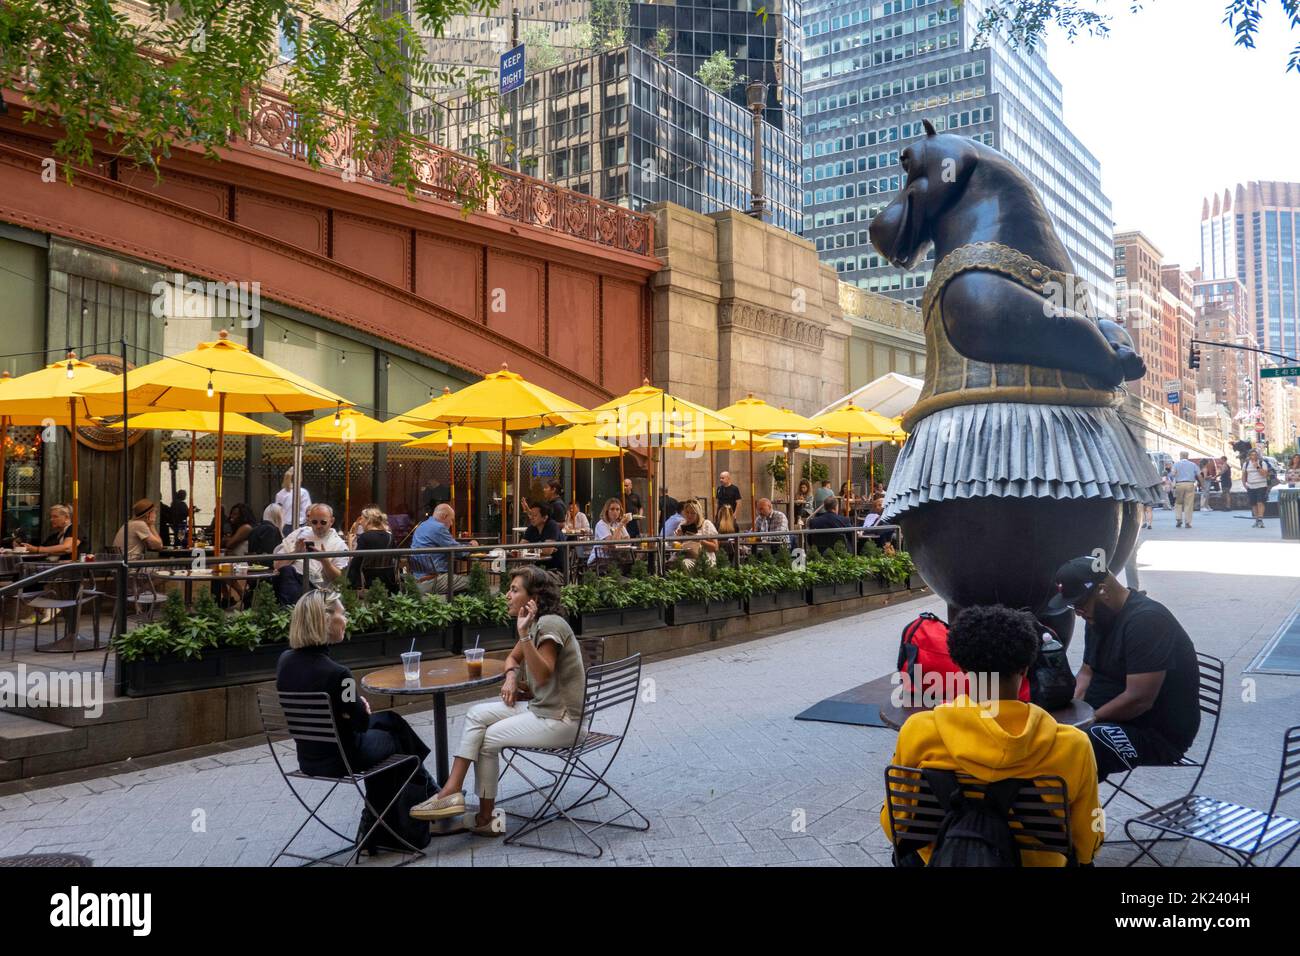 Bjorn Okholm les statues de bronze fantaisiste de Skaarup sont exposées sur Pershing Square, devant le Grand Central terminal, New York City, USA 2022 Banque D'Images